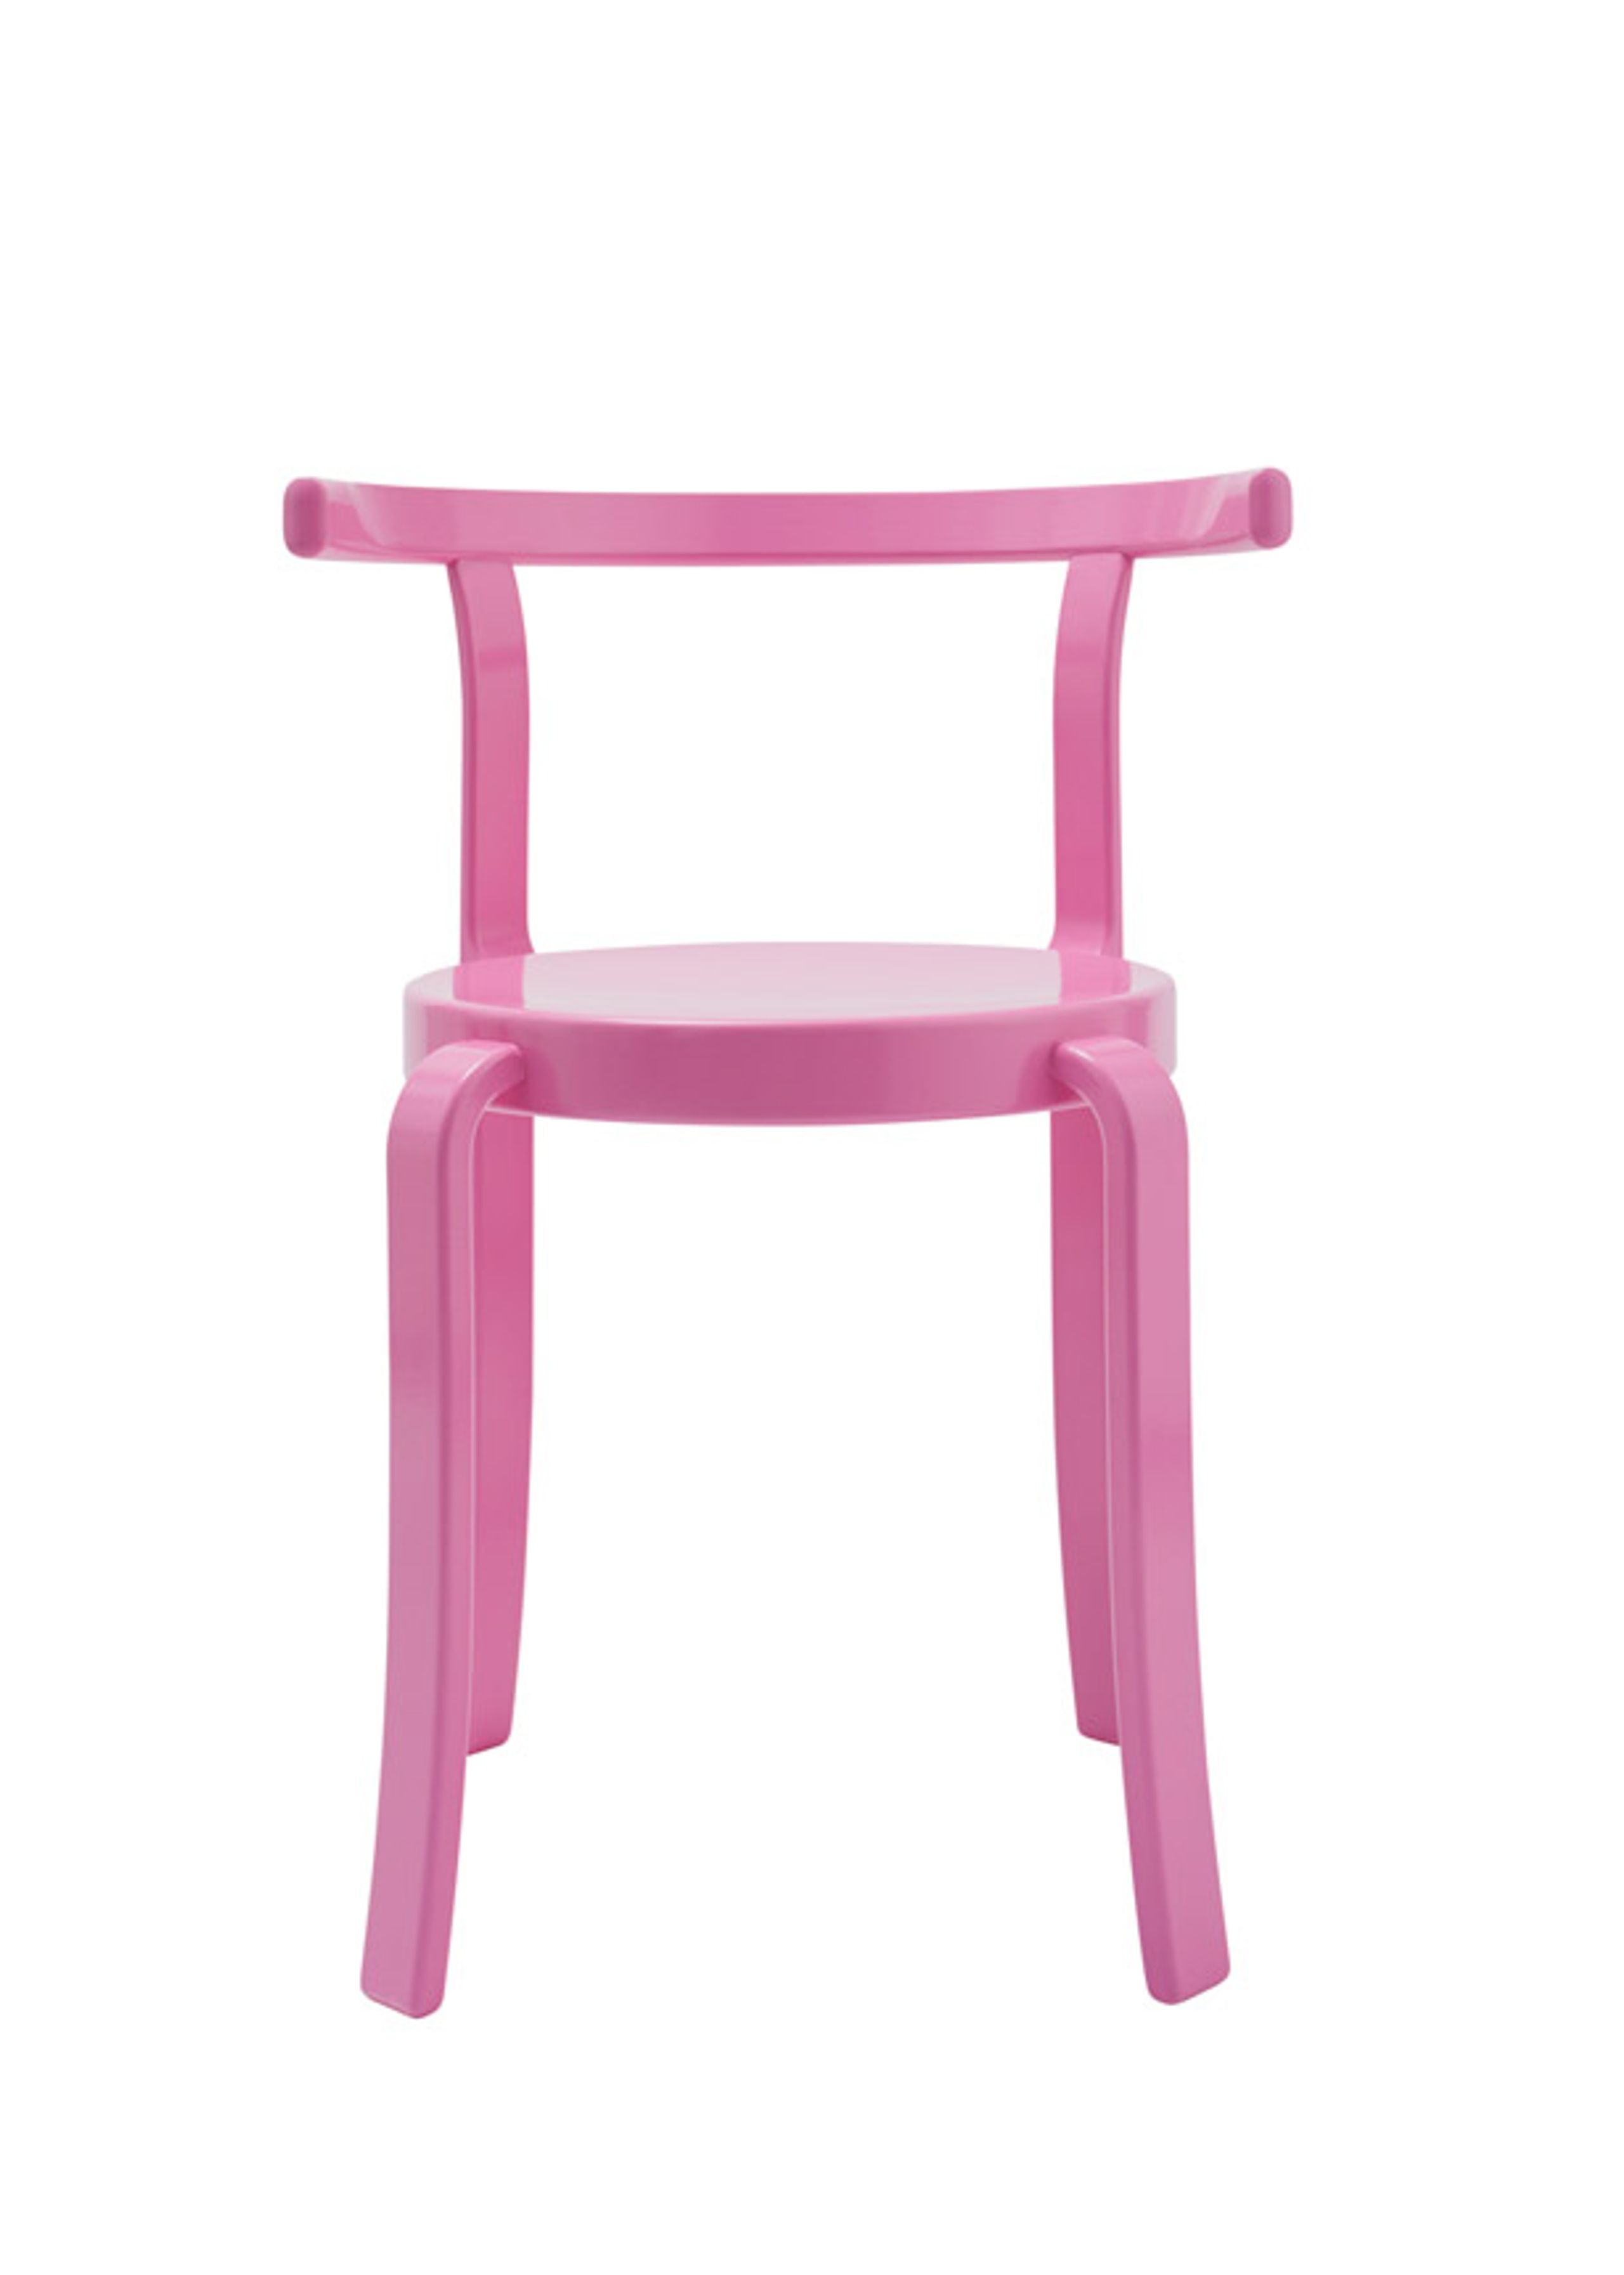 Magnus Olesen - Esstischstuhl - 8000 Series Chair - Lacquered beech / Retro pink